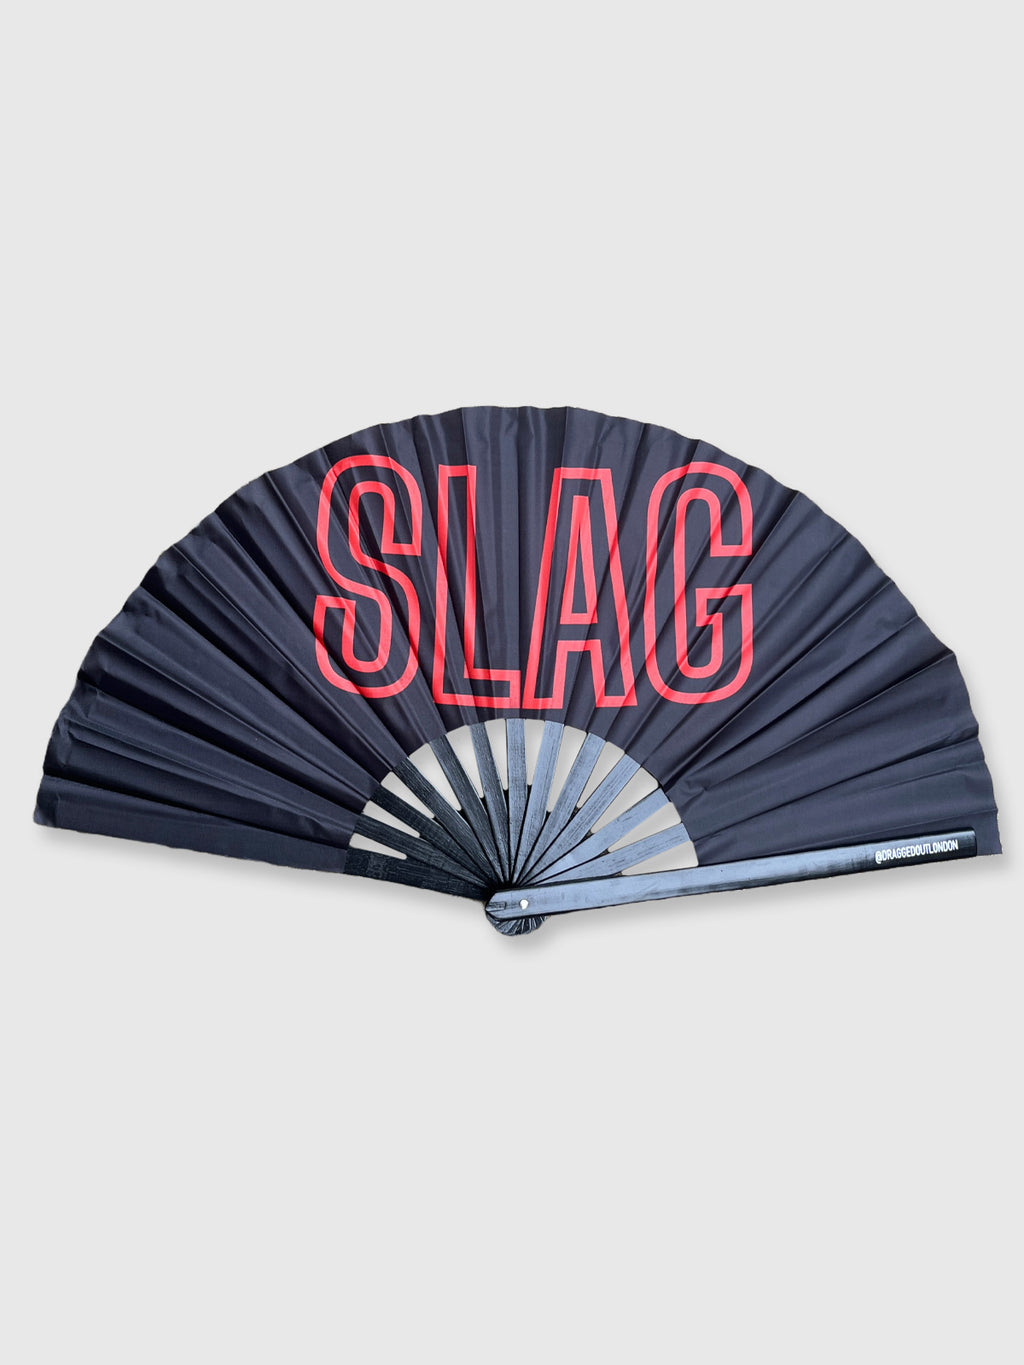 Very Large Hand Fan - Slag